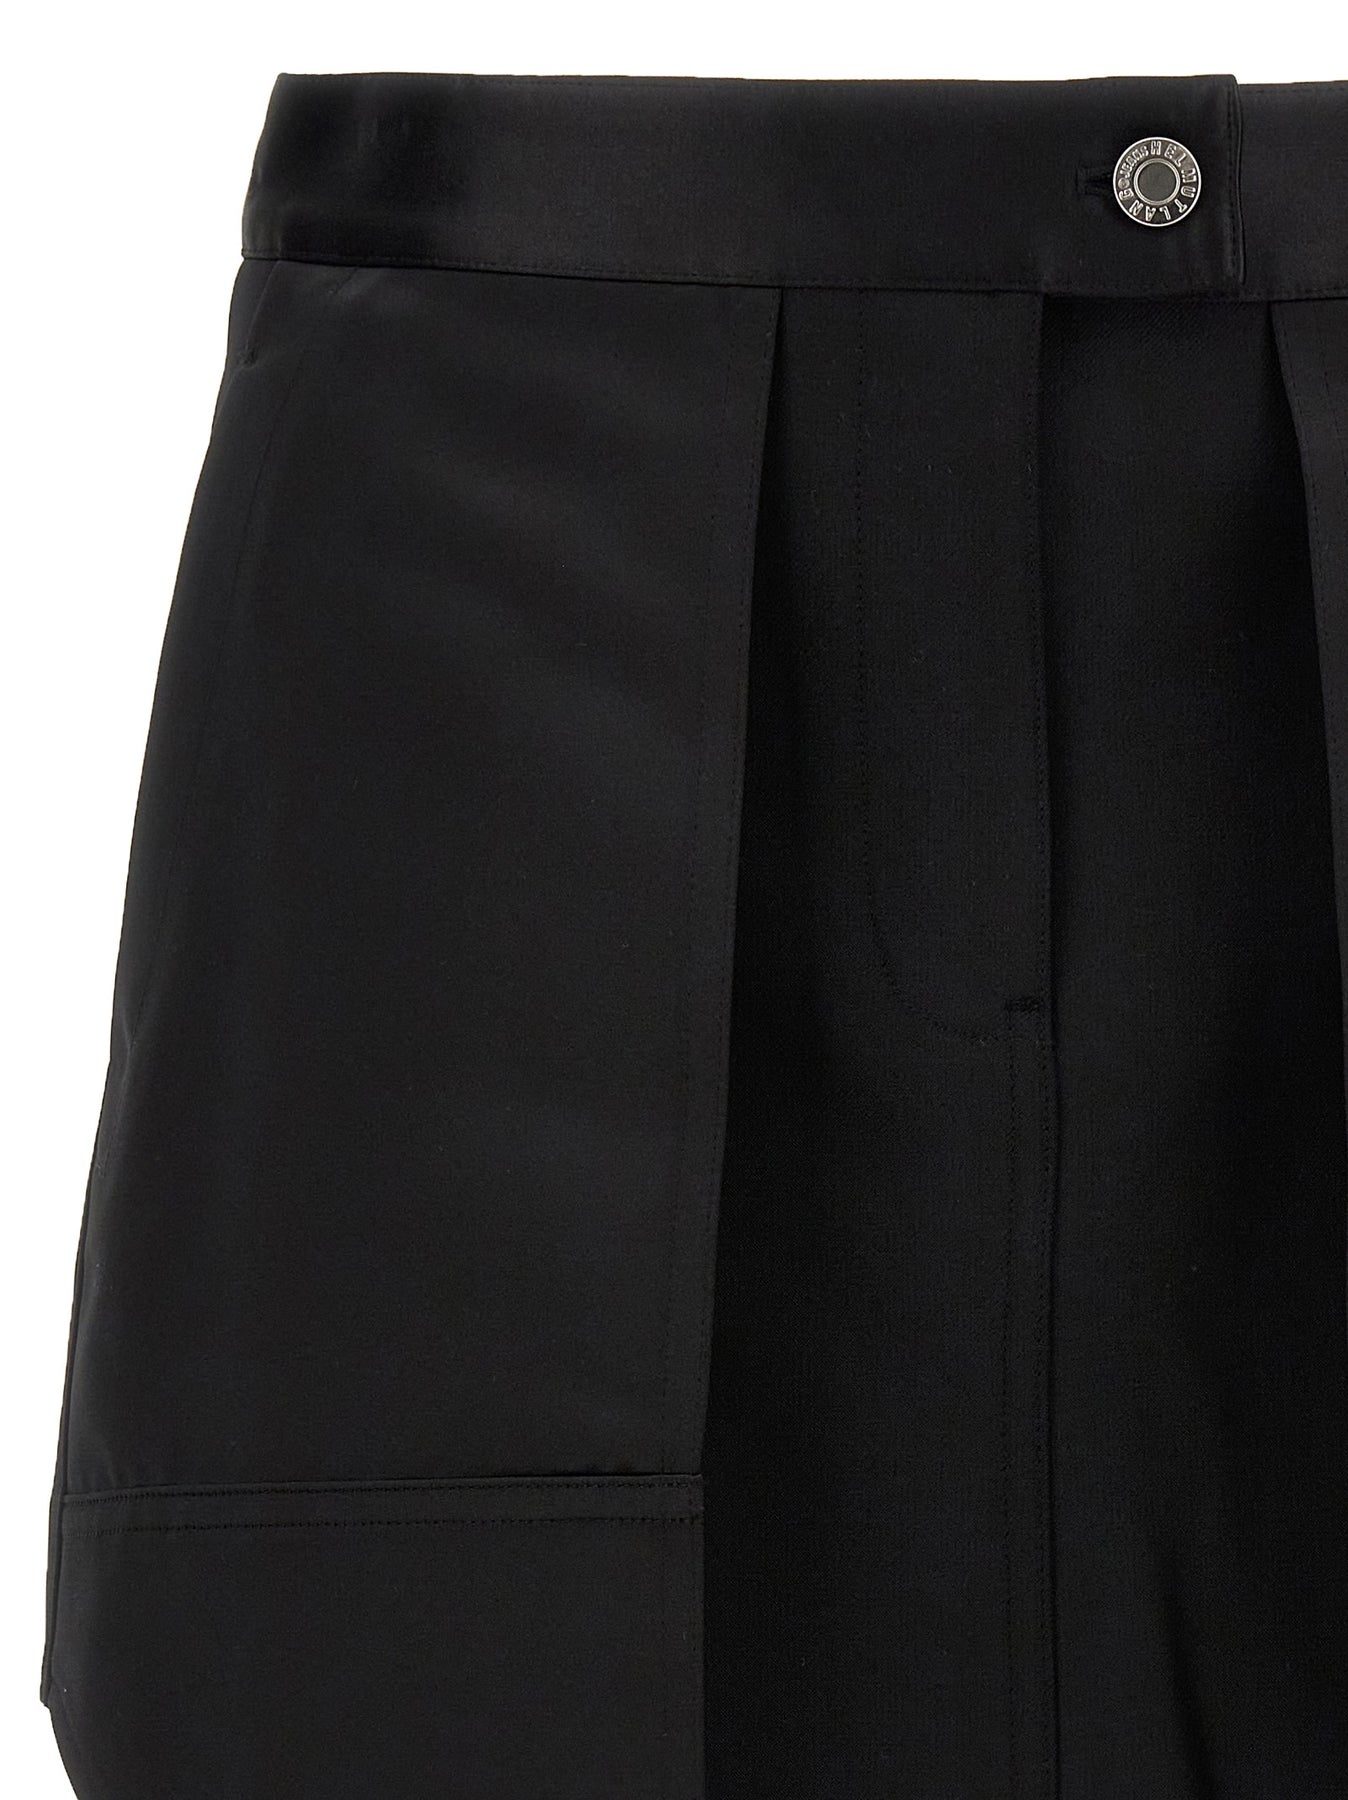 Satin Panel Skirt Skirts Black - 3